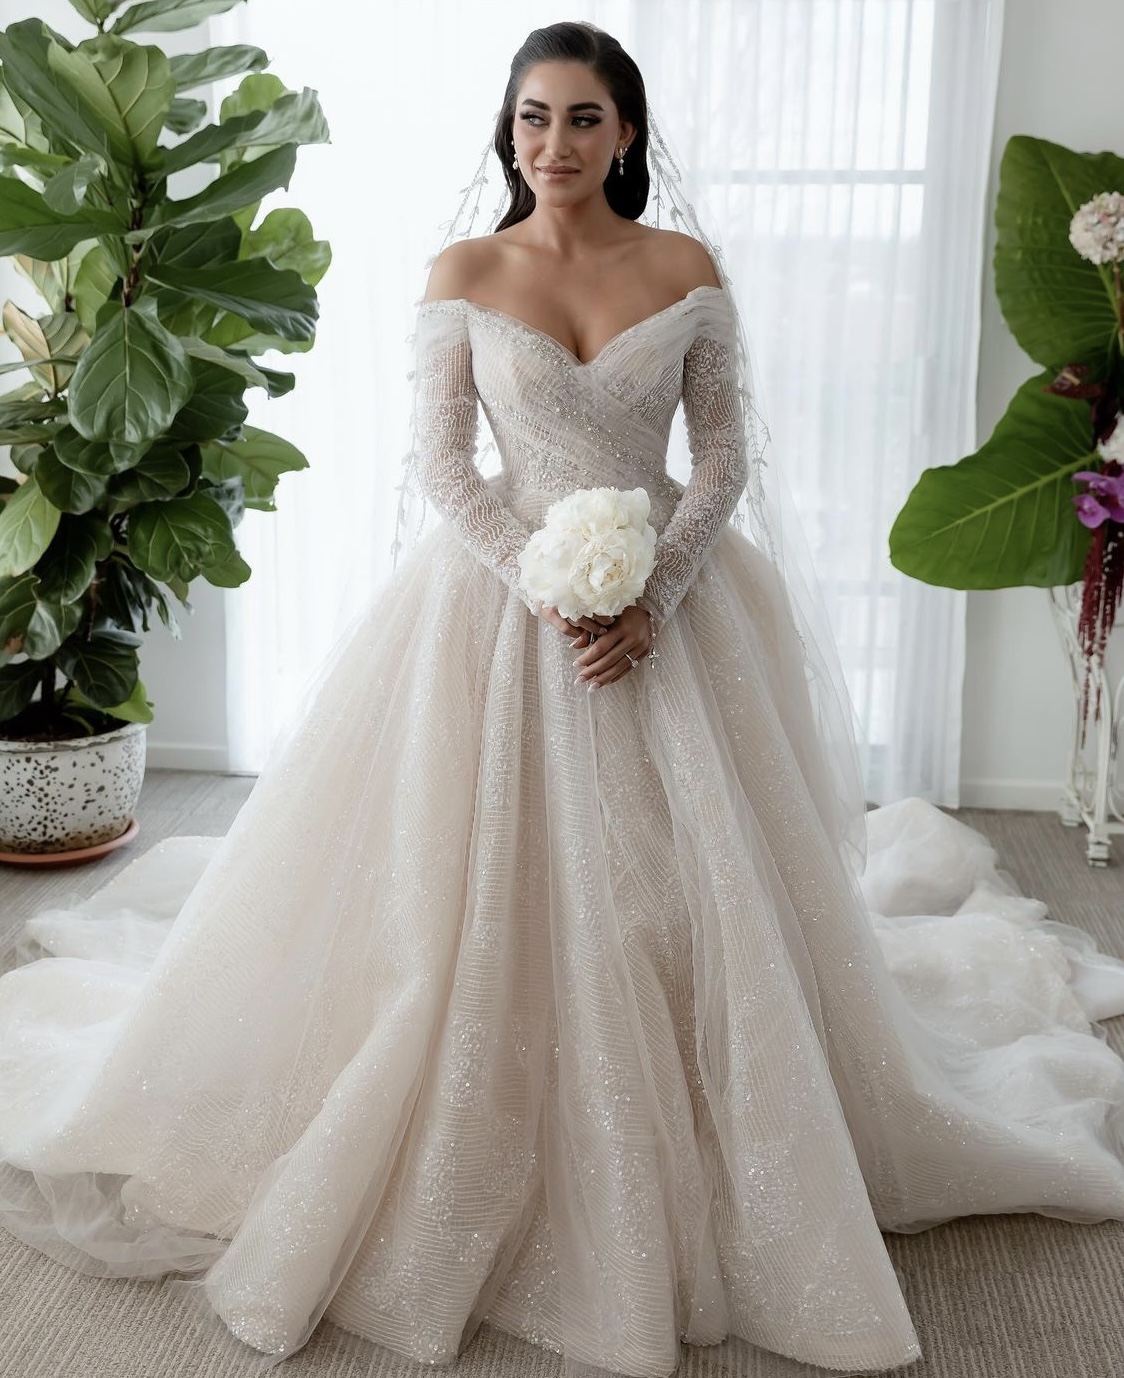 20 Wedding Dress Designers To See In NSW - Wedded Wonderland